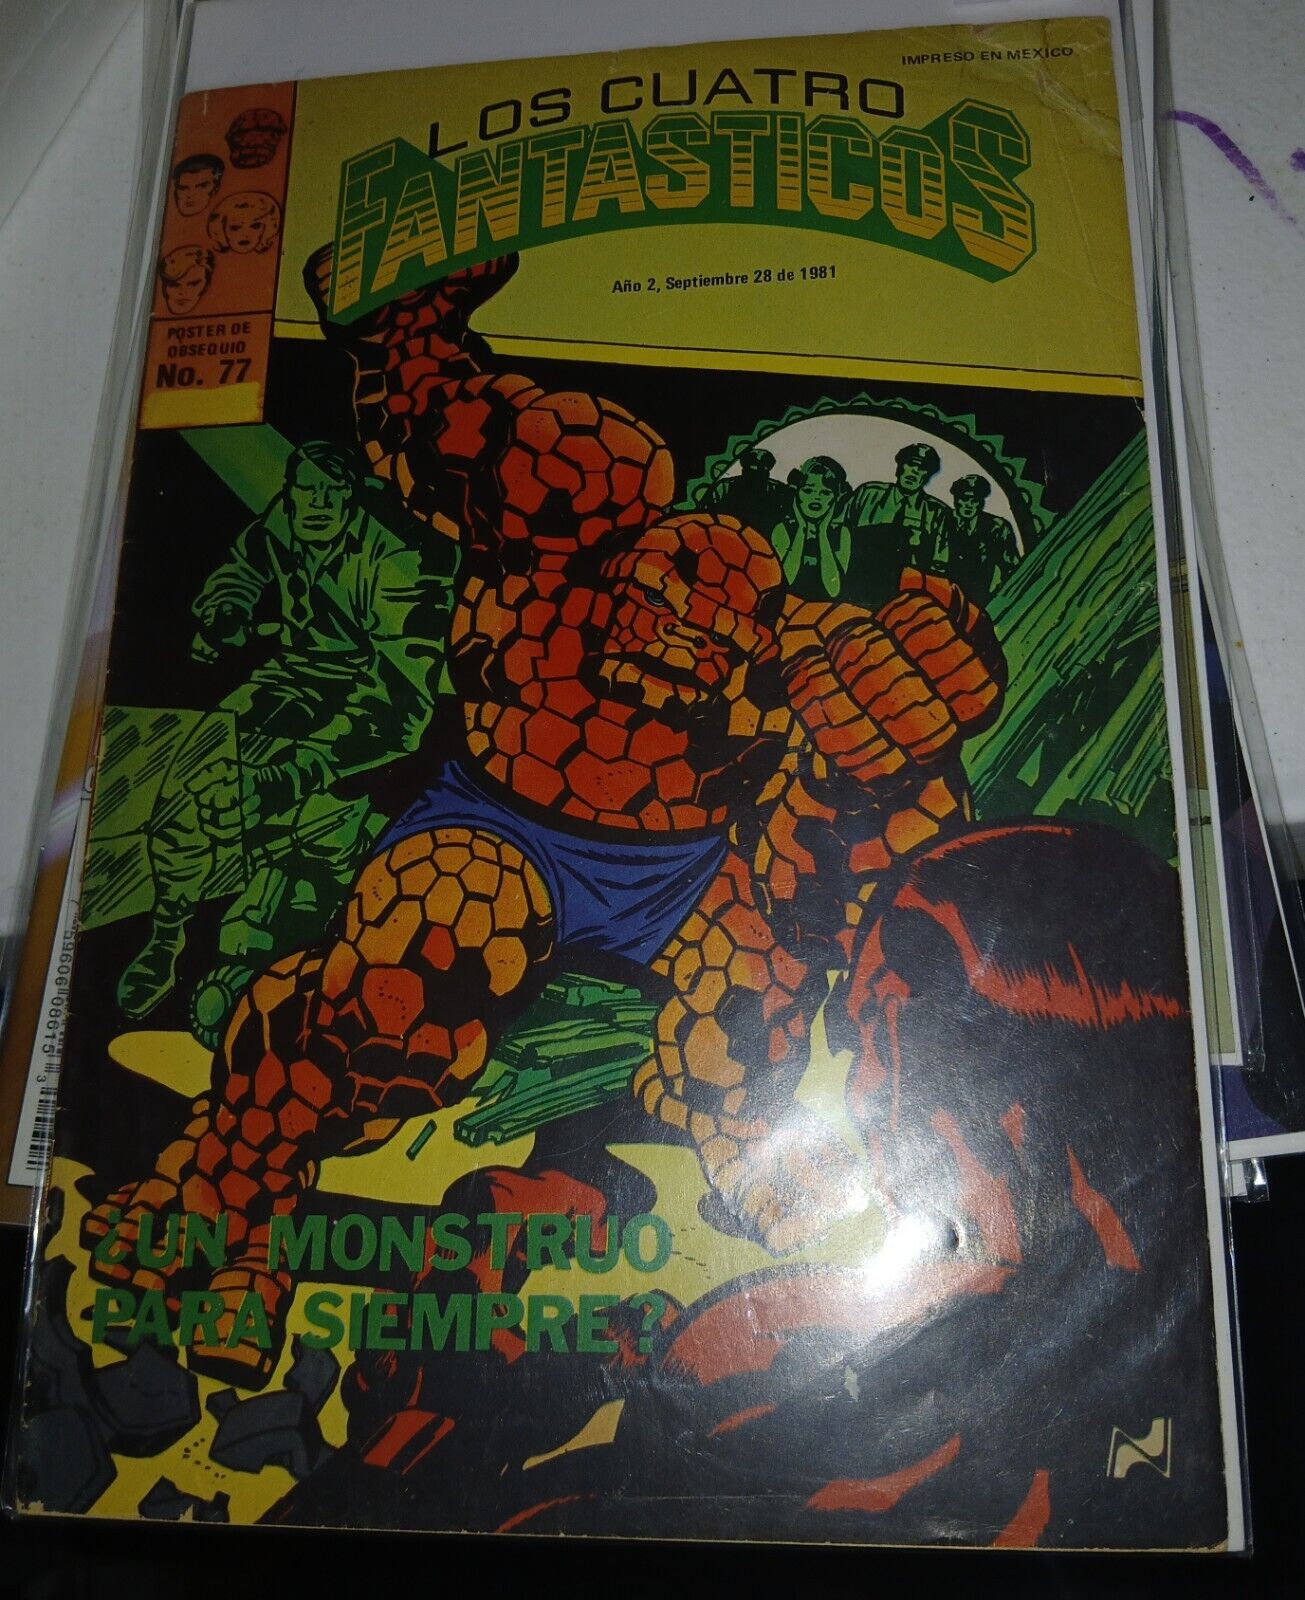 Los Cuatro Fantasticos #77( Inpreso En Mexico 1981)